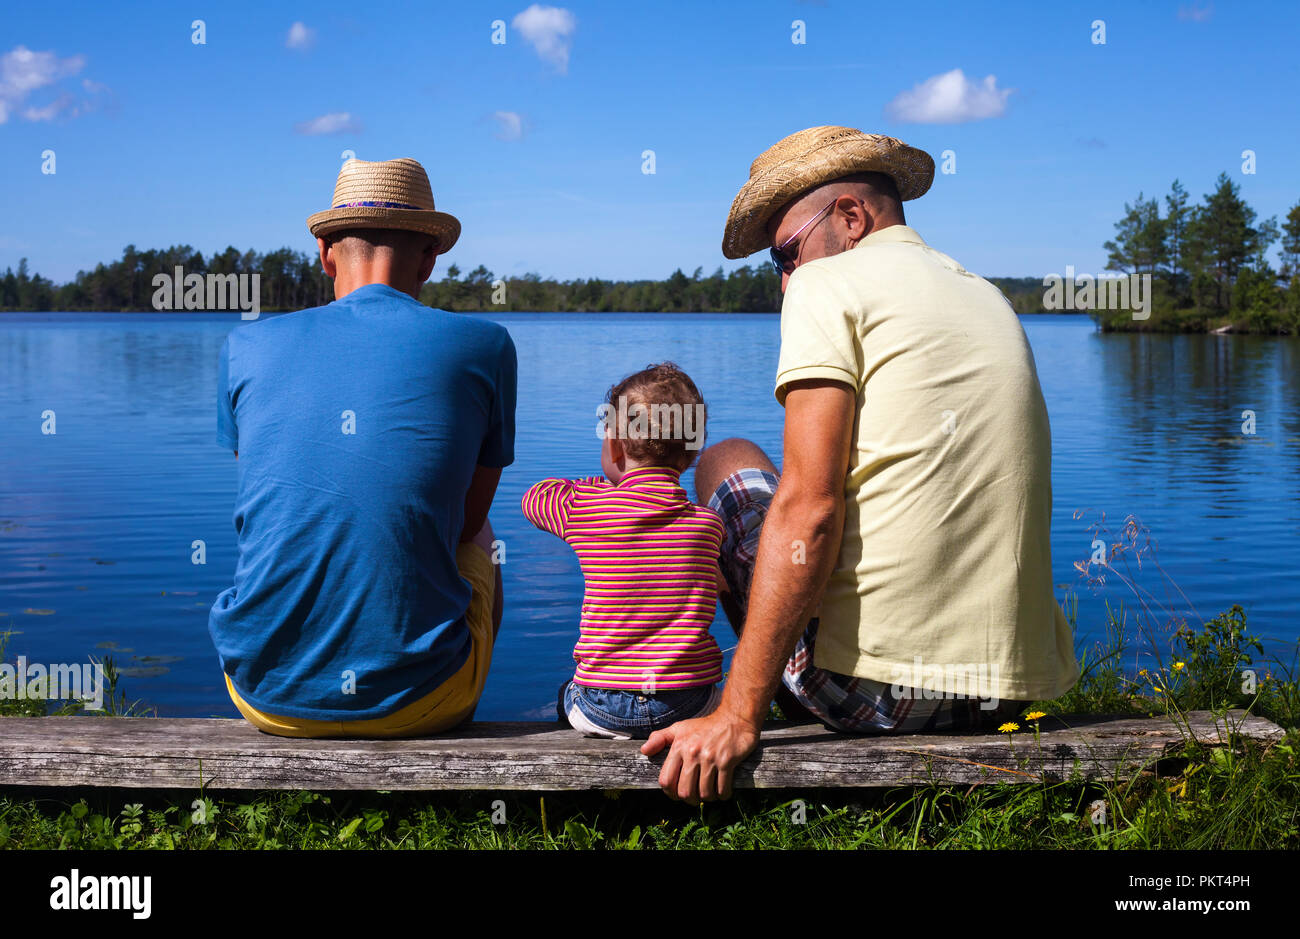 Redhead bambin assis sur un banc près d'une rivière avec deux hommes sur les côtés - gay parenting concept Banque D'Images